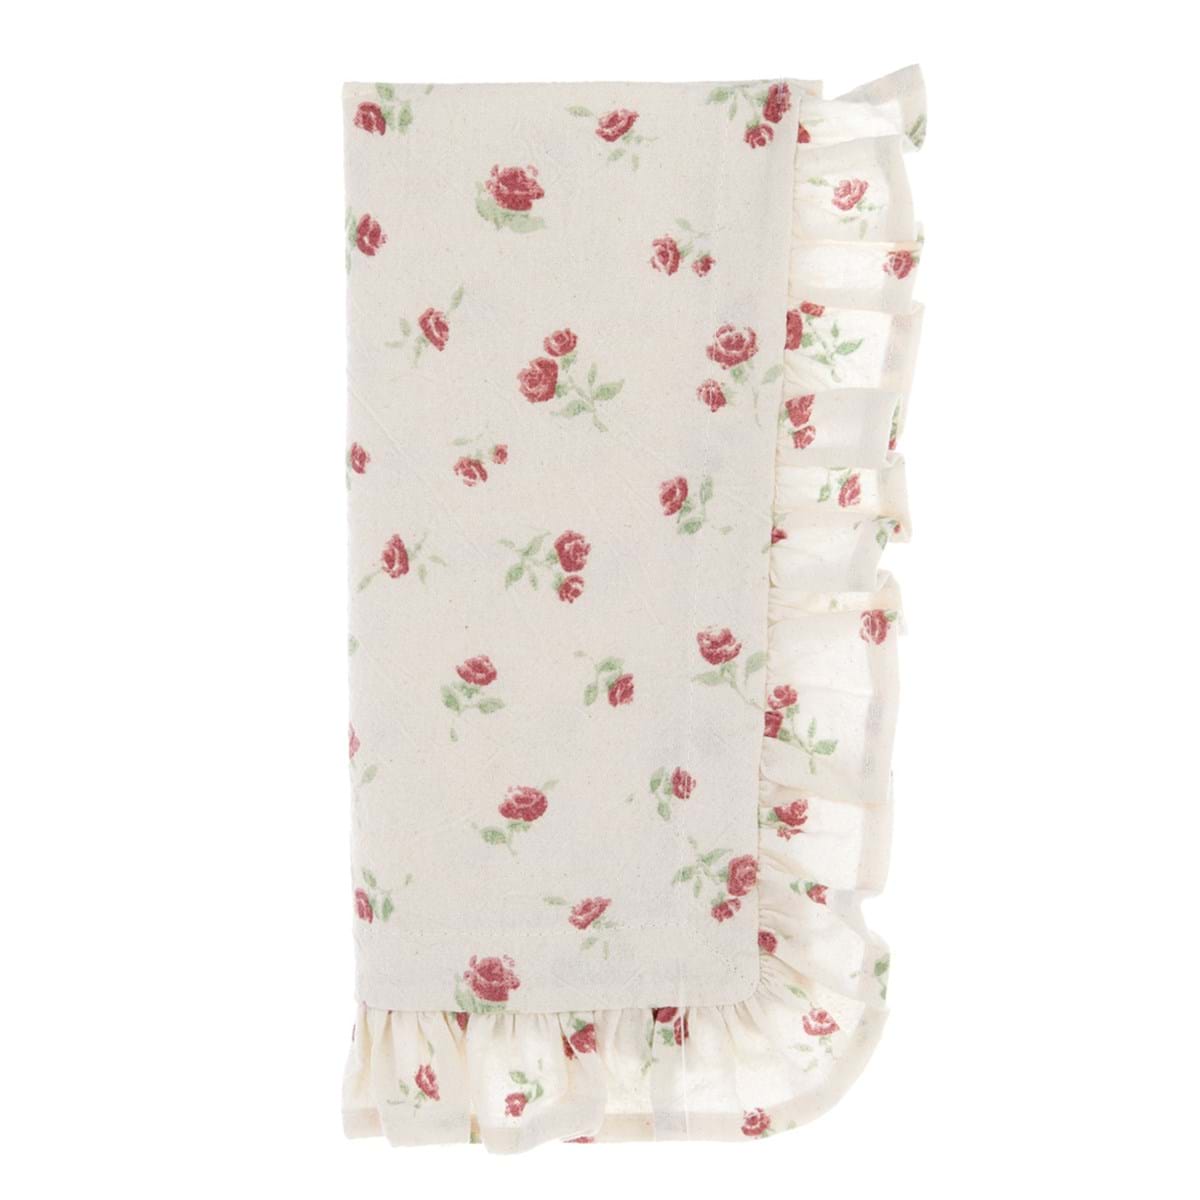 serviette en tissus fleurs roses shabby chic